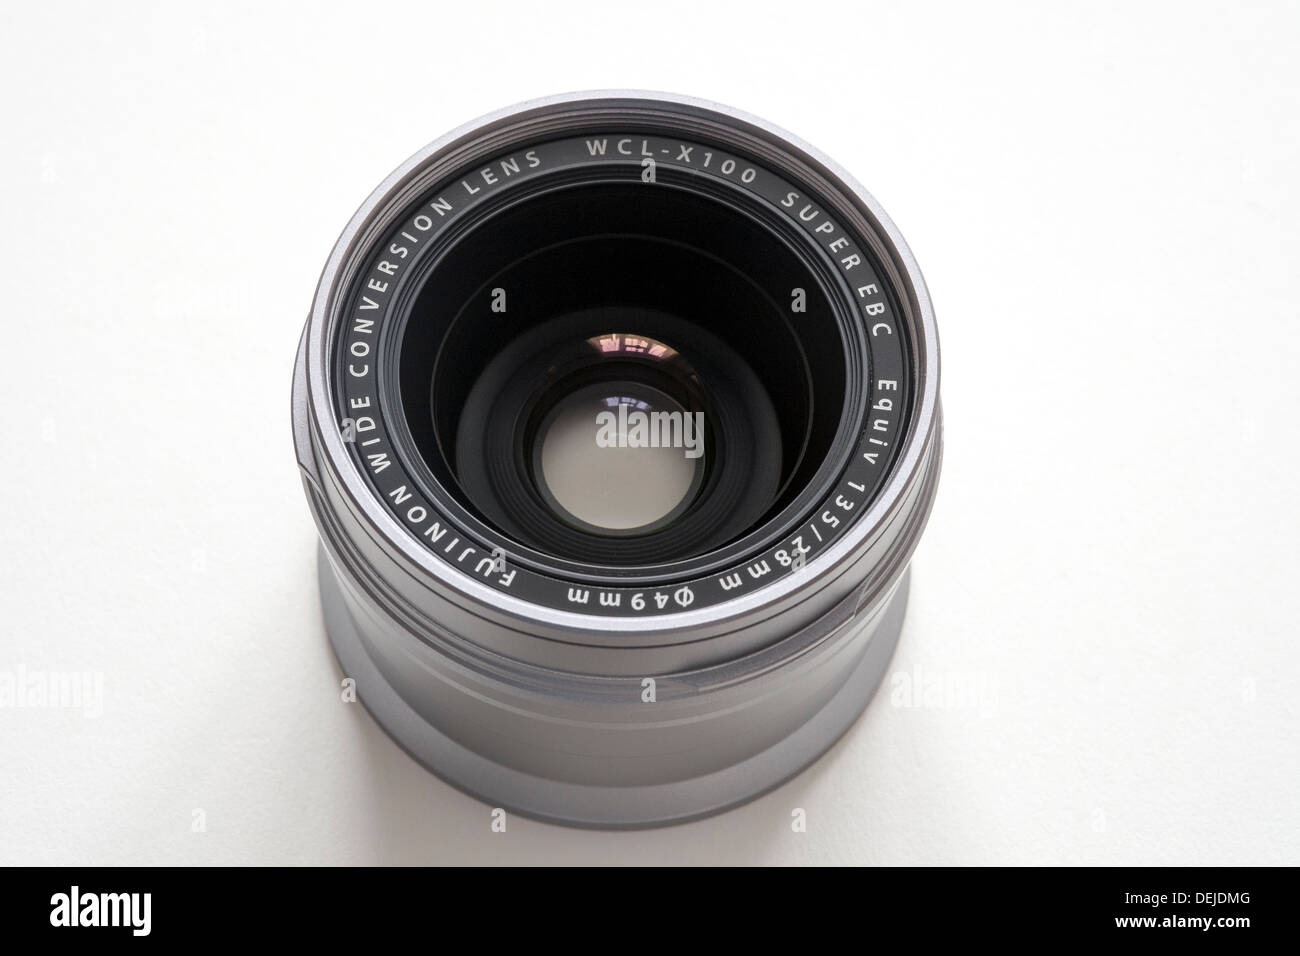 Fml-X100 obiettivo grandangolare convertitore per Fujifilm X100 fotocamera digitale su sfondo bianco Foto Stock